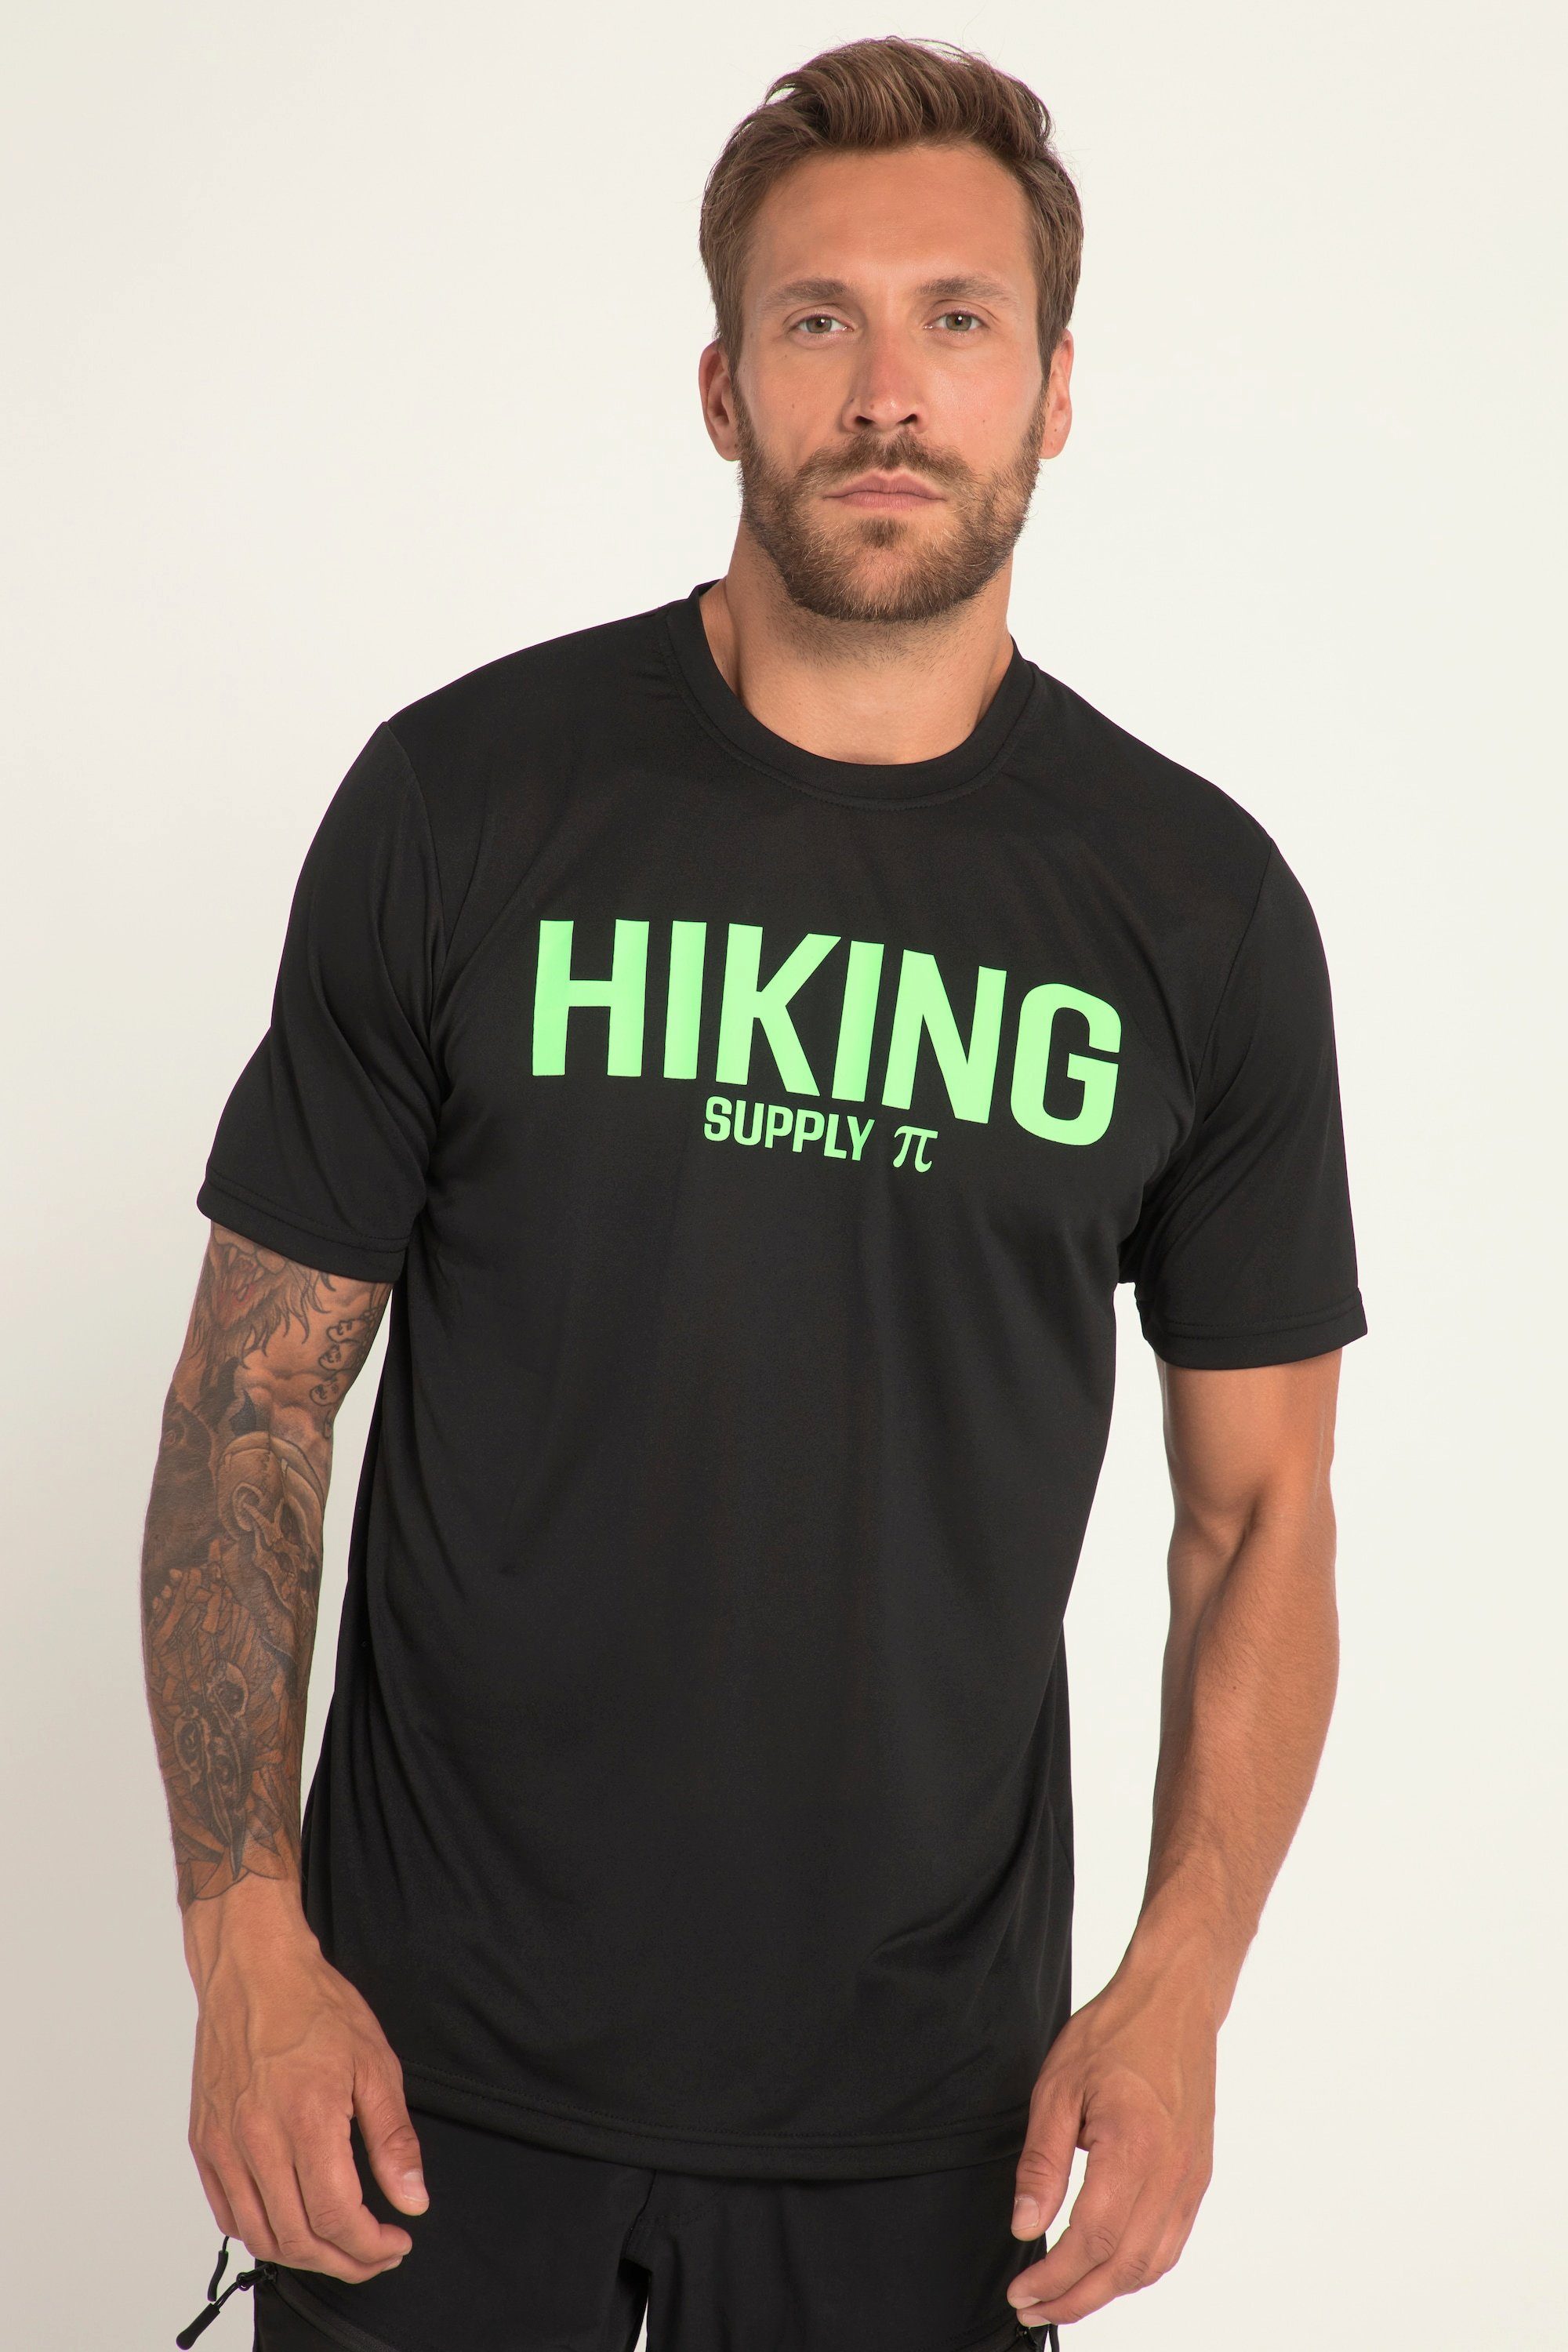 JP1880 T-Shirt T-Shirt Outdoor Hiking Print Rundhals